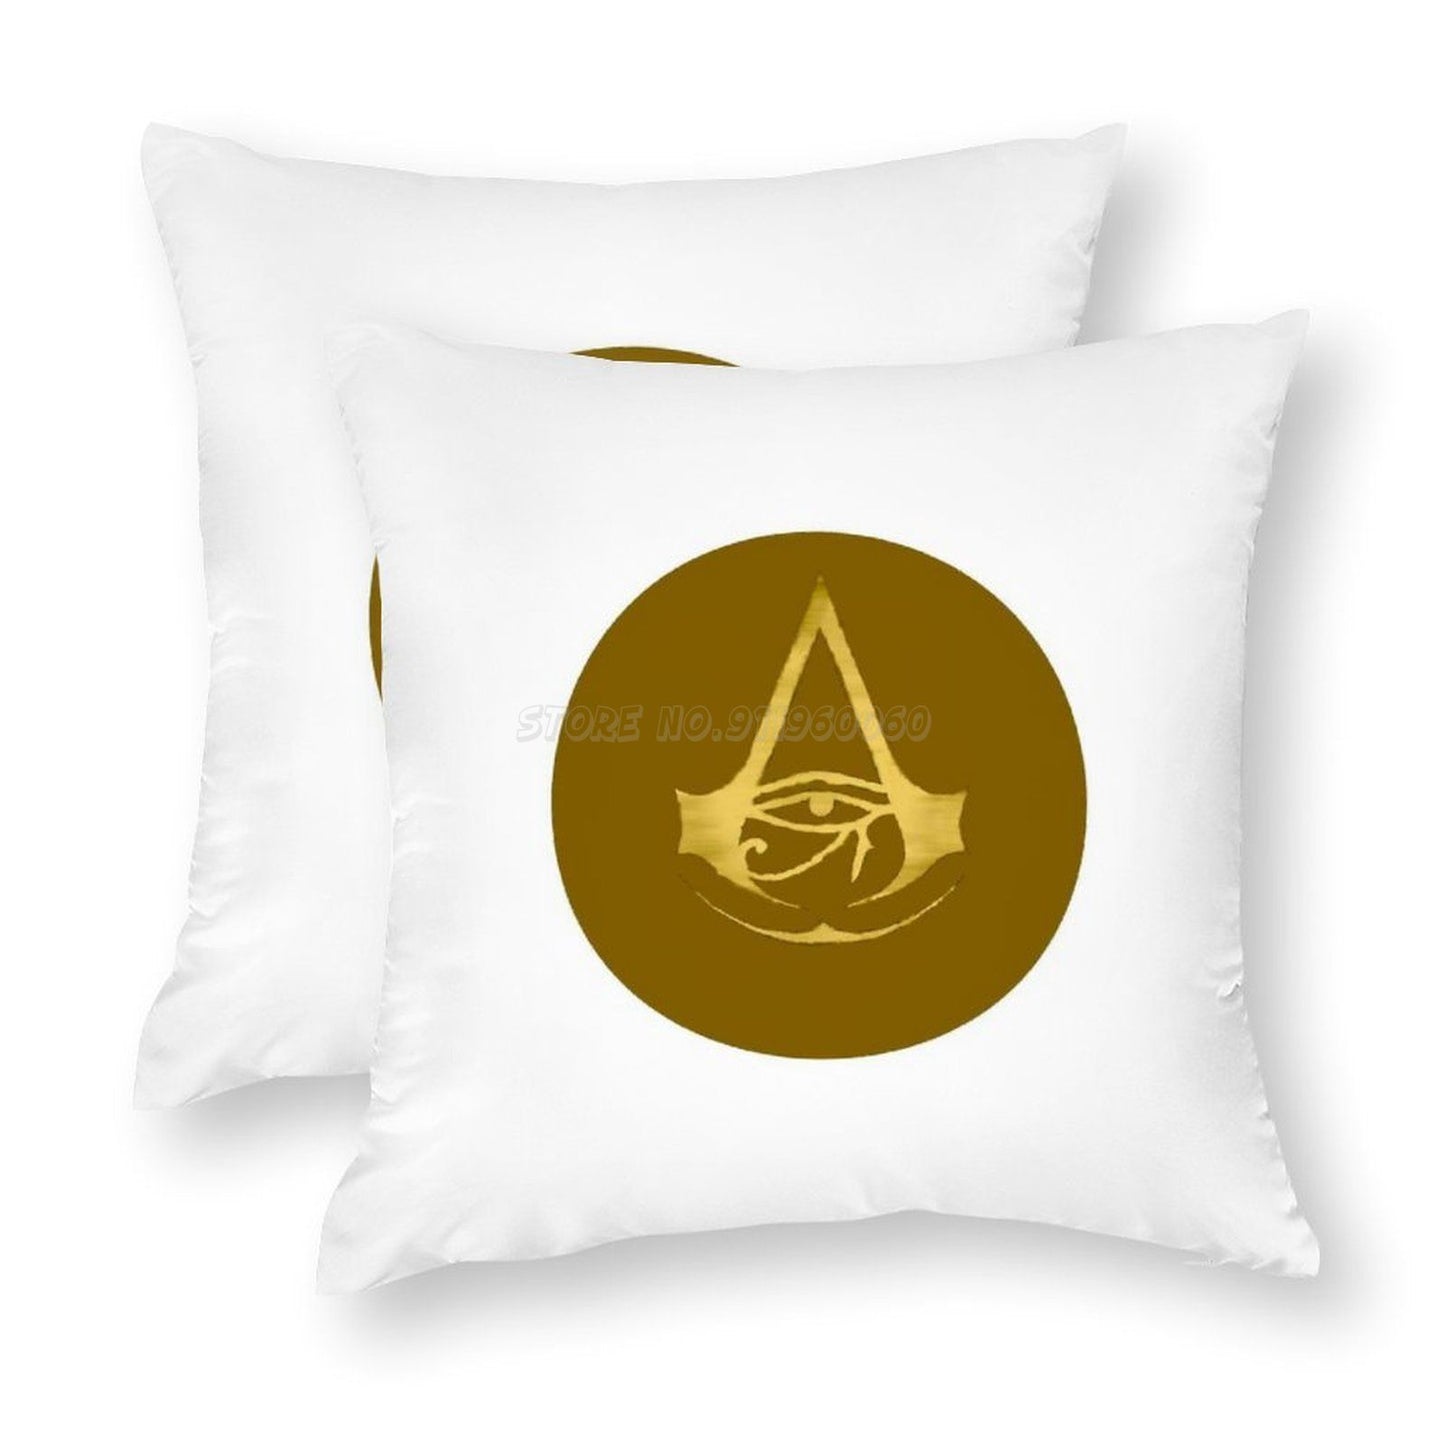 Taie d'oreiller logo Assassin's Creed Origine